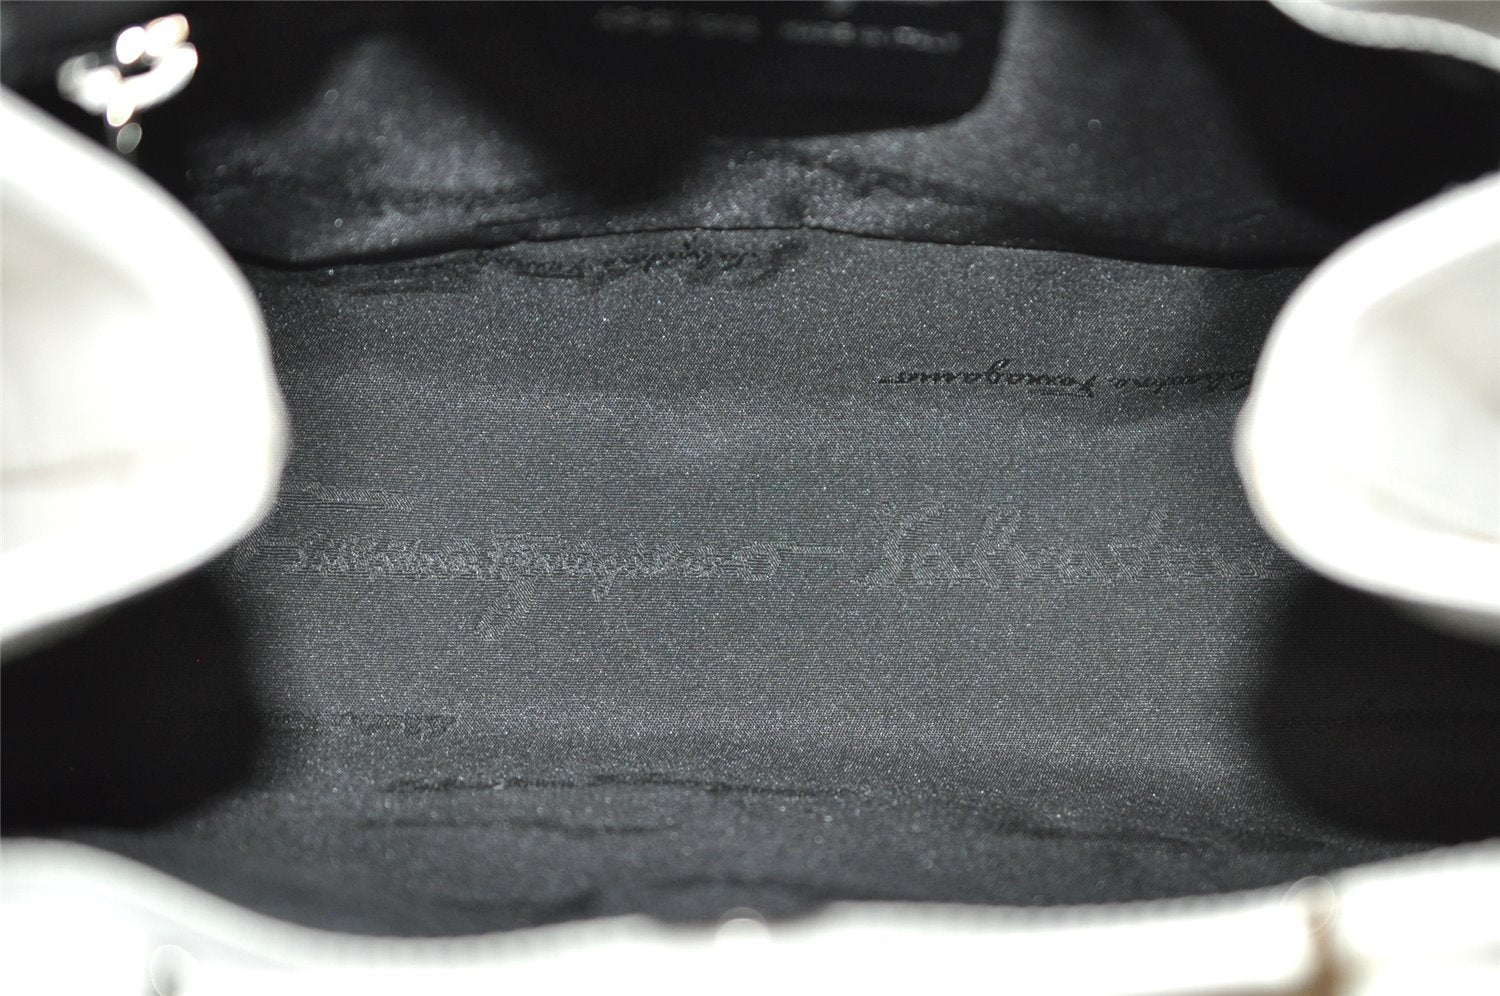 Authentic Salvatore Ferragamo Gancini Leather Hand Tote Bag Purse White 8398I